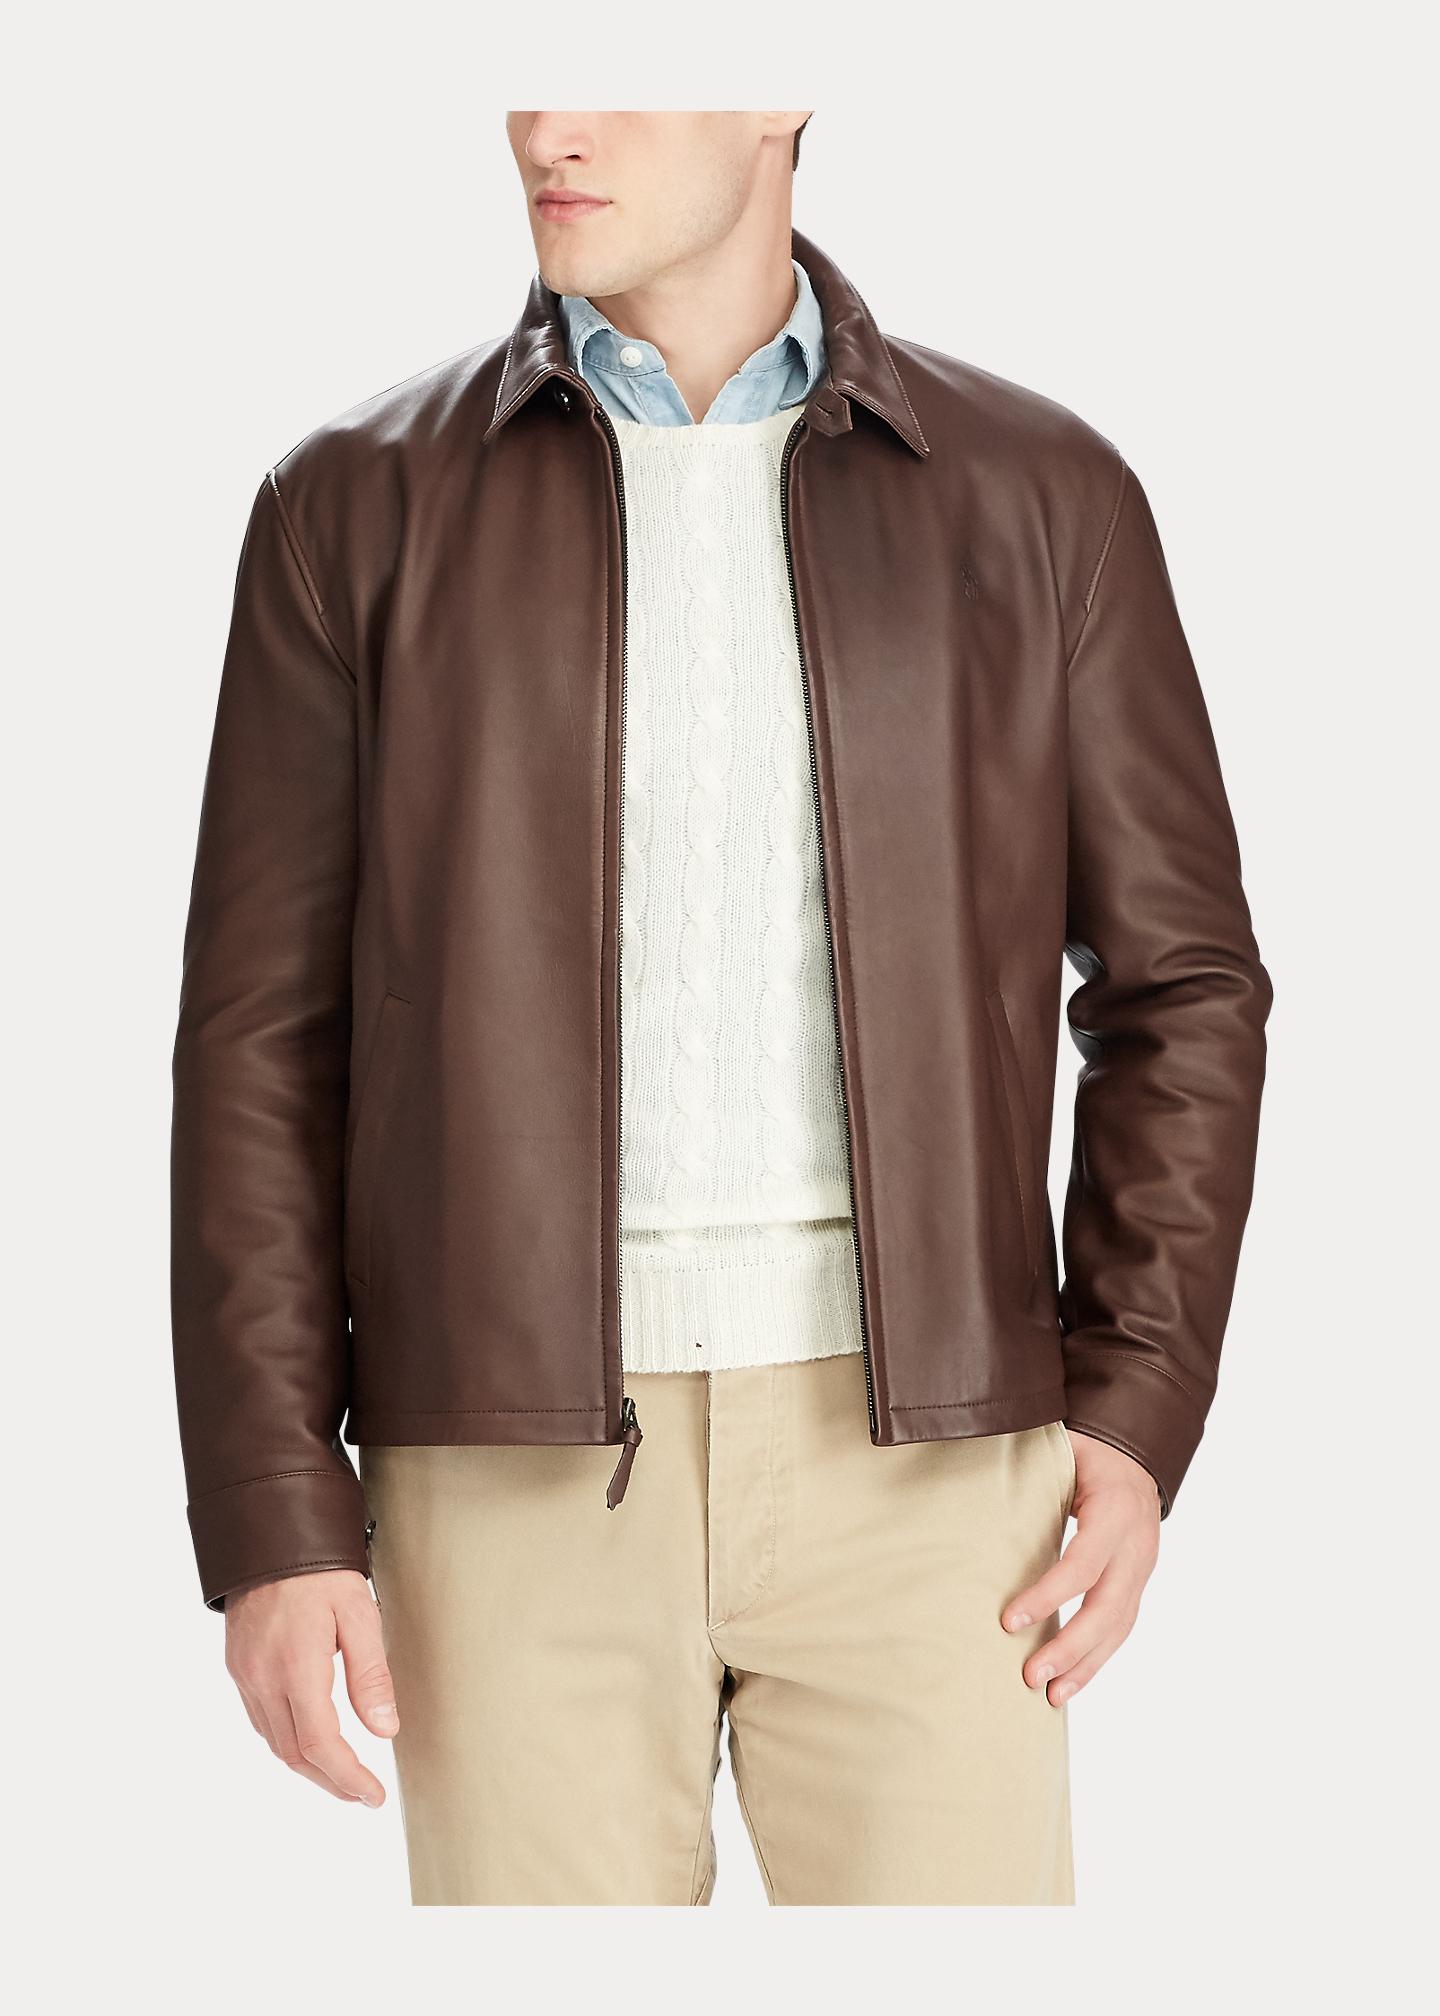 Ralph Lauren Lambskin Leather Jacket in Brown for Men | Lyst UK